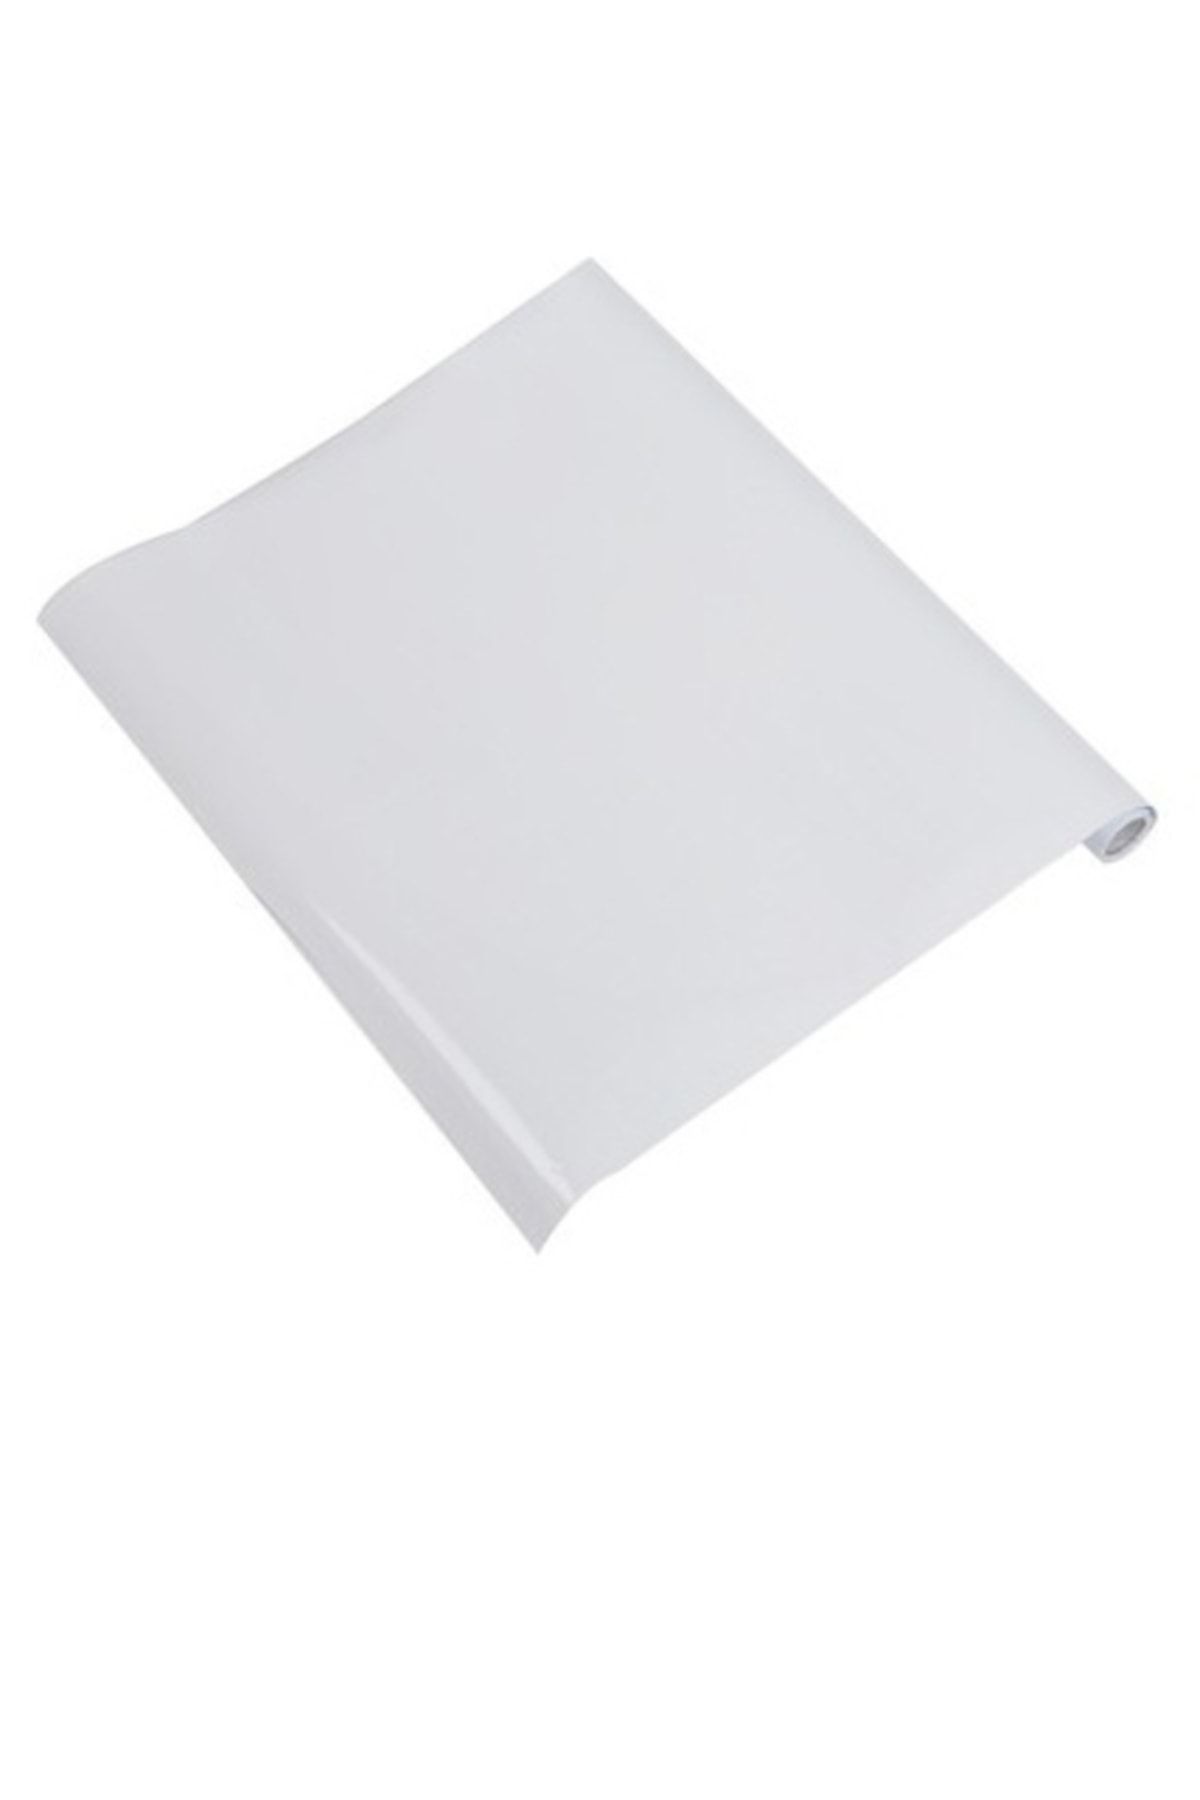 Kaizen Market Manyetik Yapışkanlı Beyaz Manyetik Kağıt Tahta 2 Li (120x300 Cm)